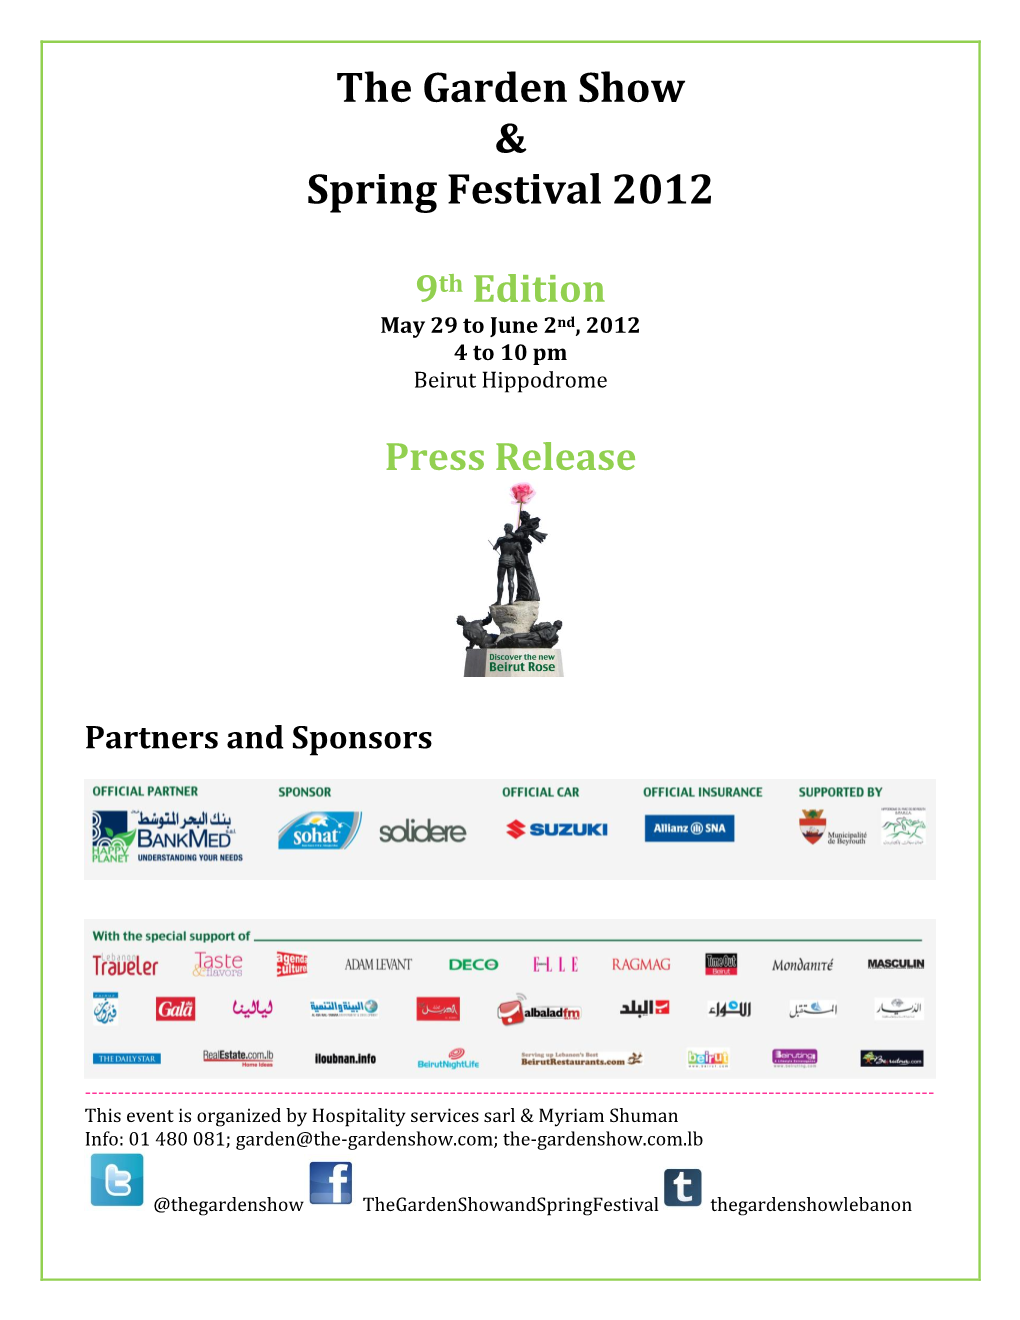 The Garden Show & Spring Festival 2012